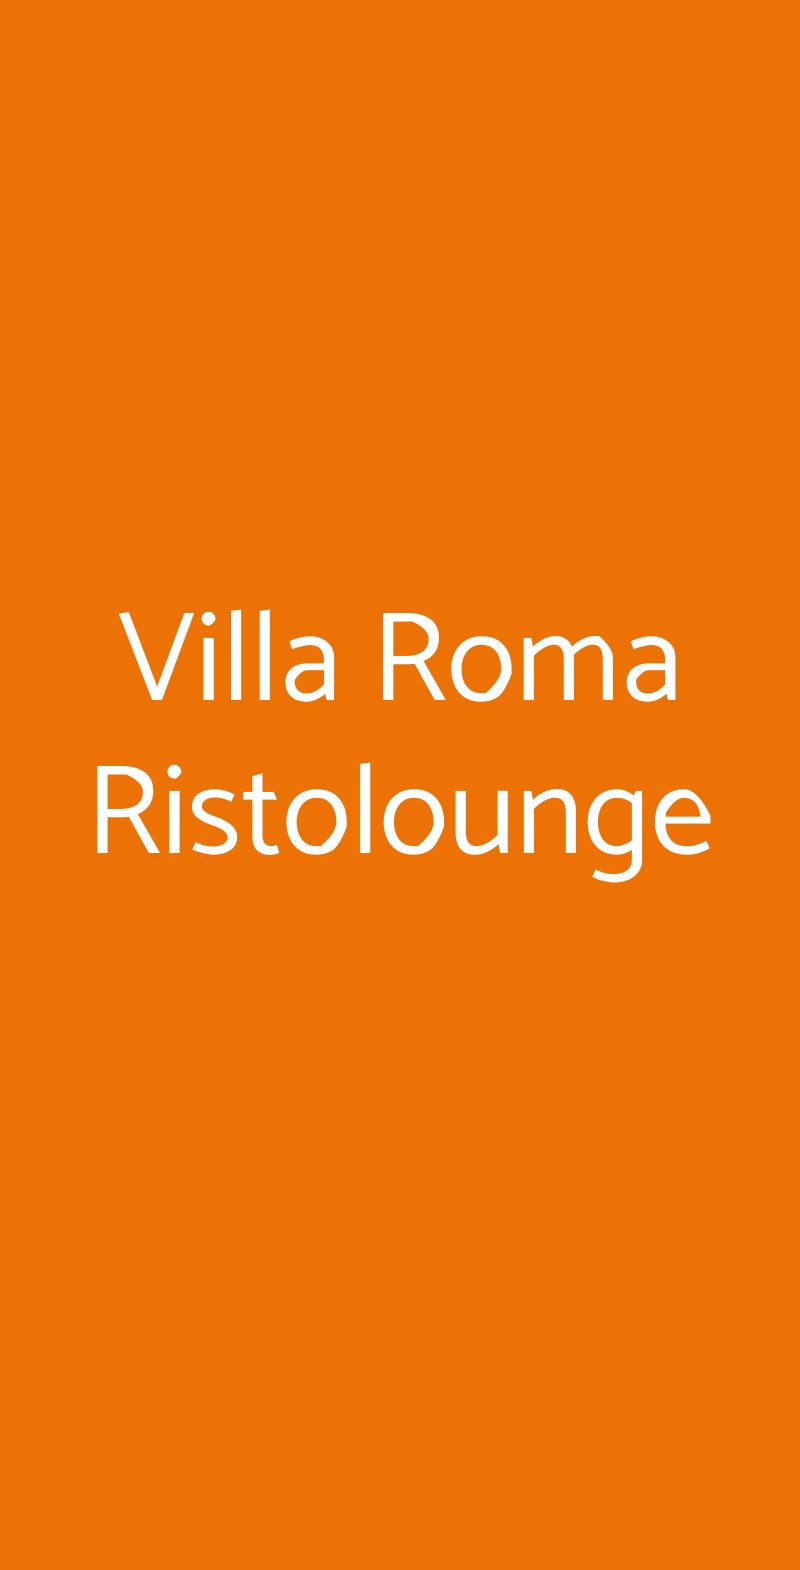 Villa Roma Ristolounge Pisa menù 1 pagina